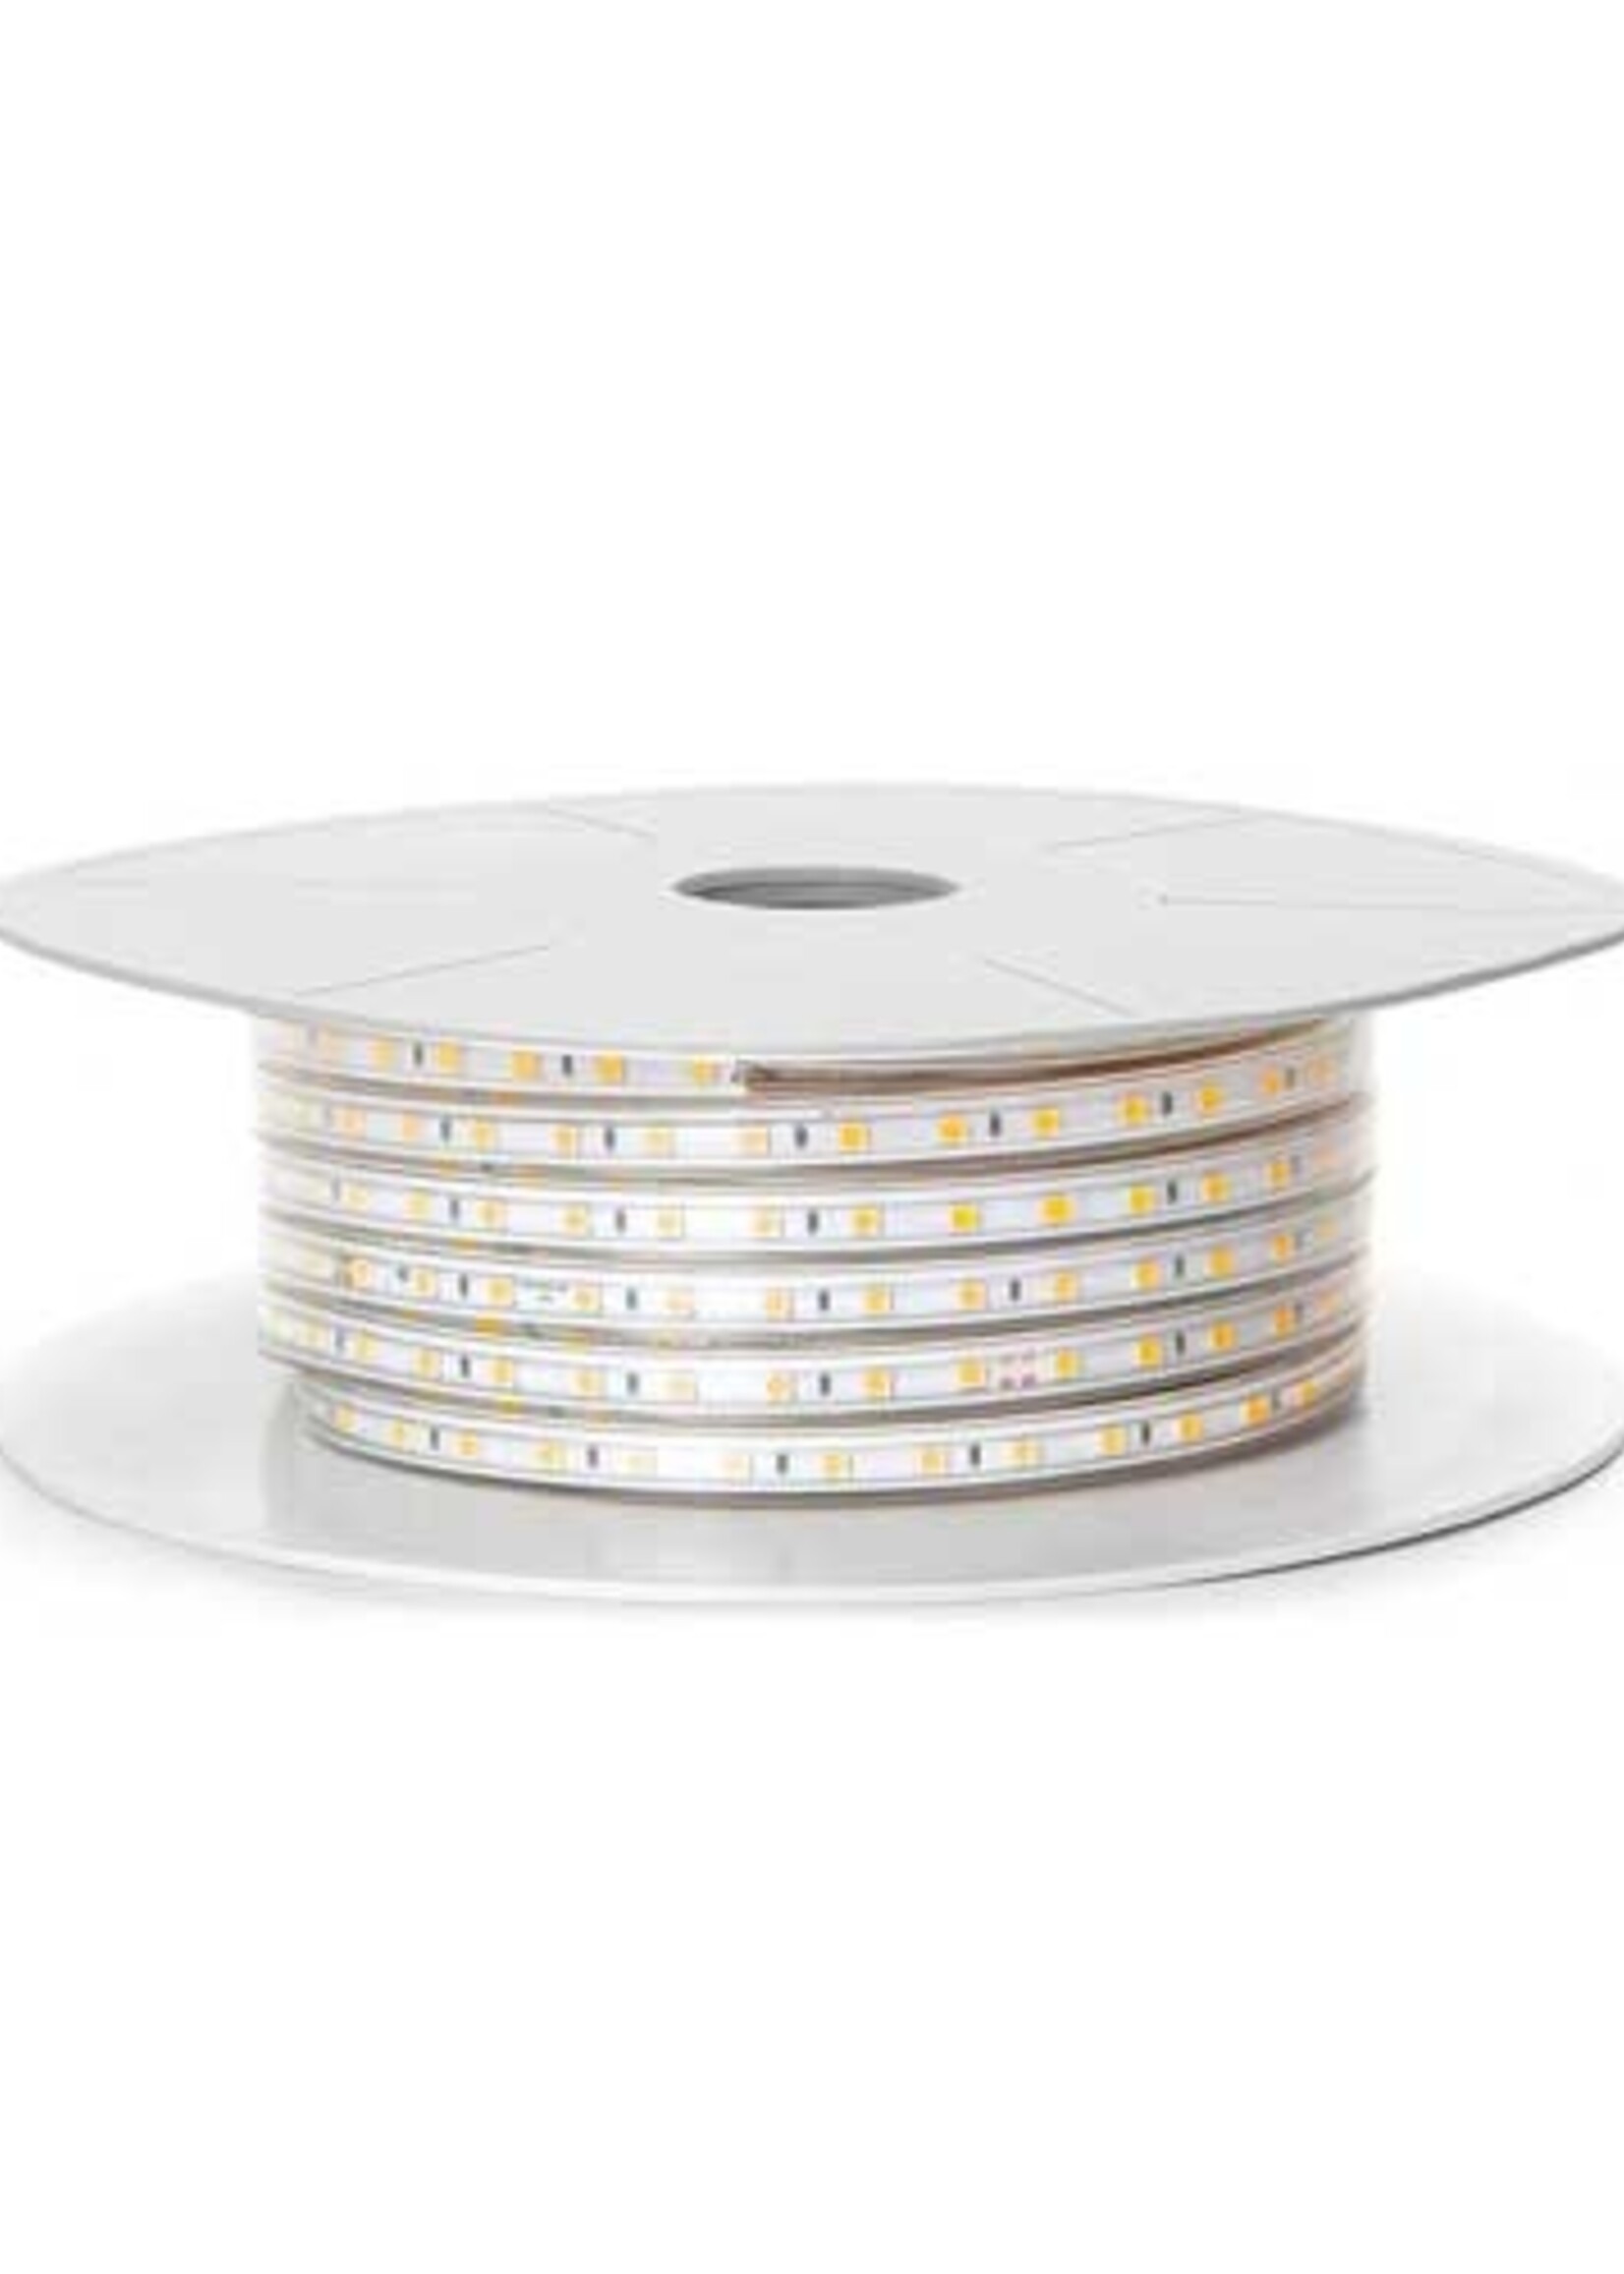 LEDWINKEL-Online LED Strip 50 meter IP65 Pro-120 LEDS/m 220V